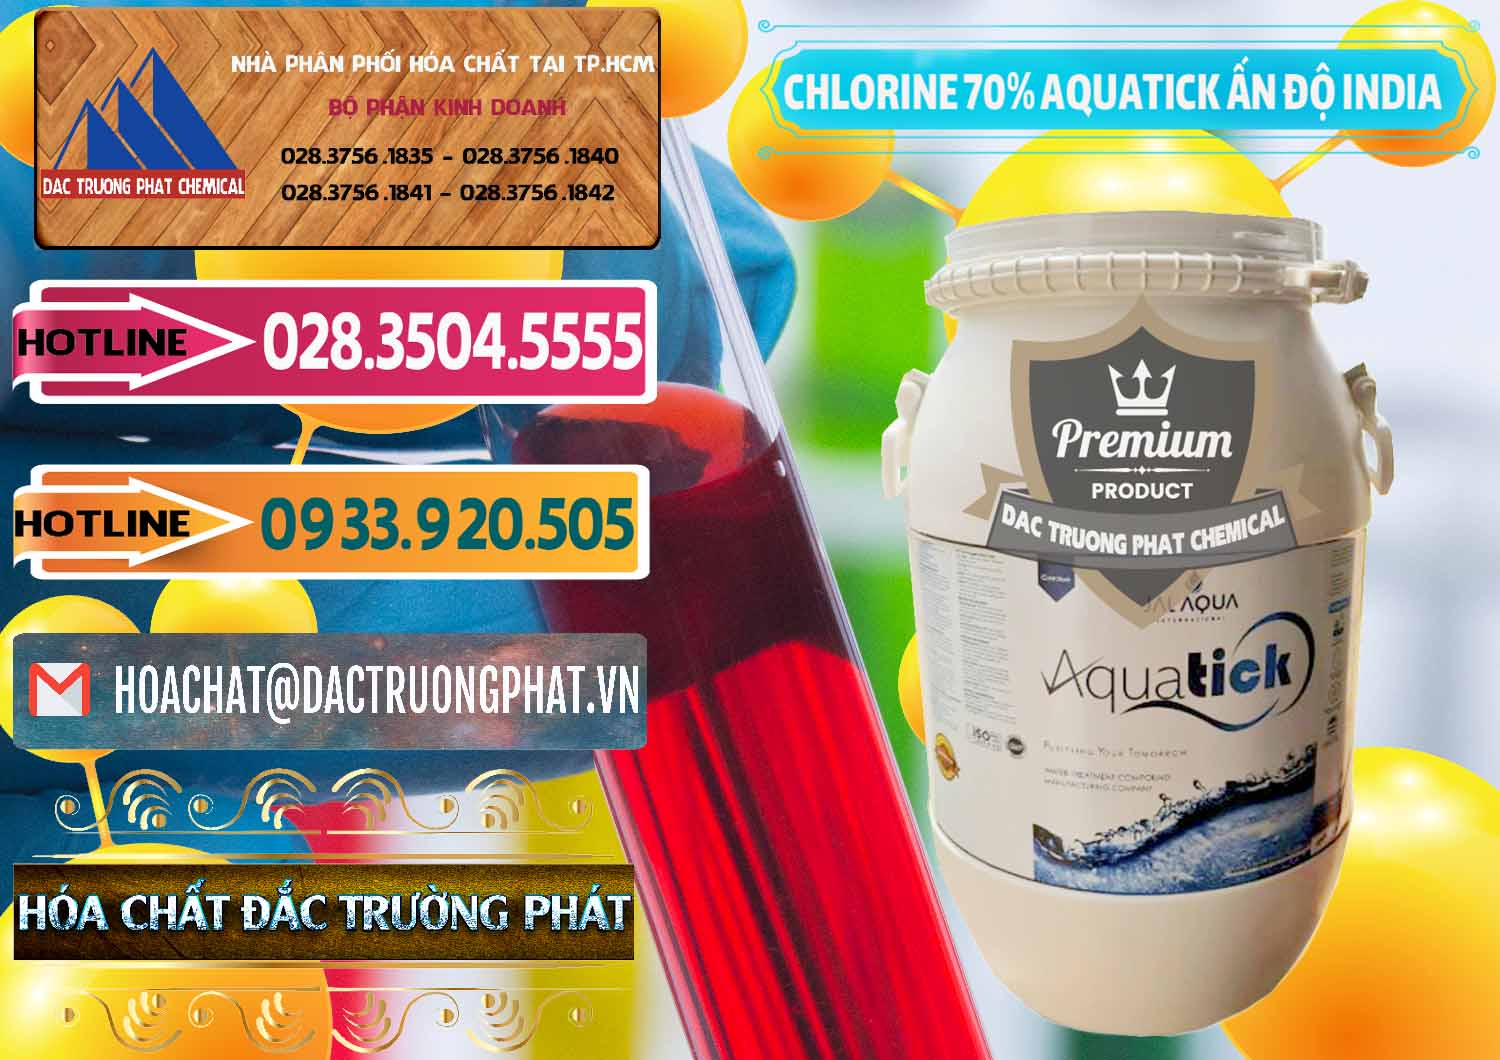 Công ty chuyên kinh doanh và bán Chlorine – Clorin 70% Aquatick Jal Aqua Ấn Độ India - 0215 - Nơi cung cấp & phân phối hóa chất tại TP.HCM - dactruongphat.vn